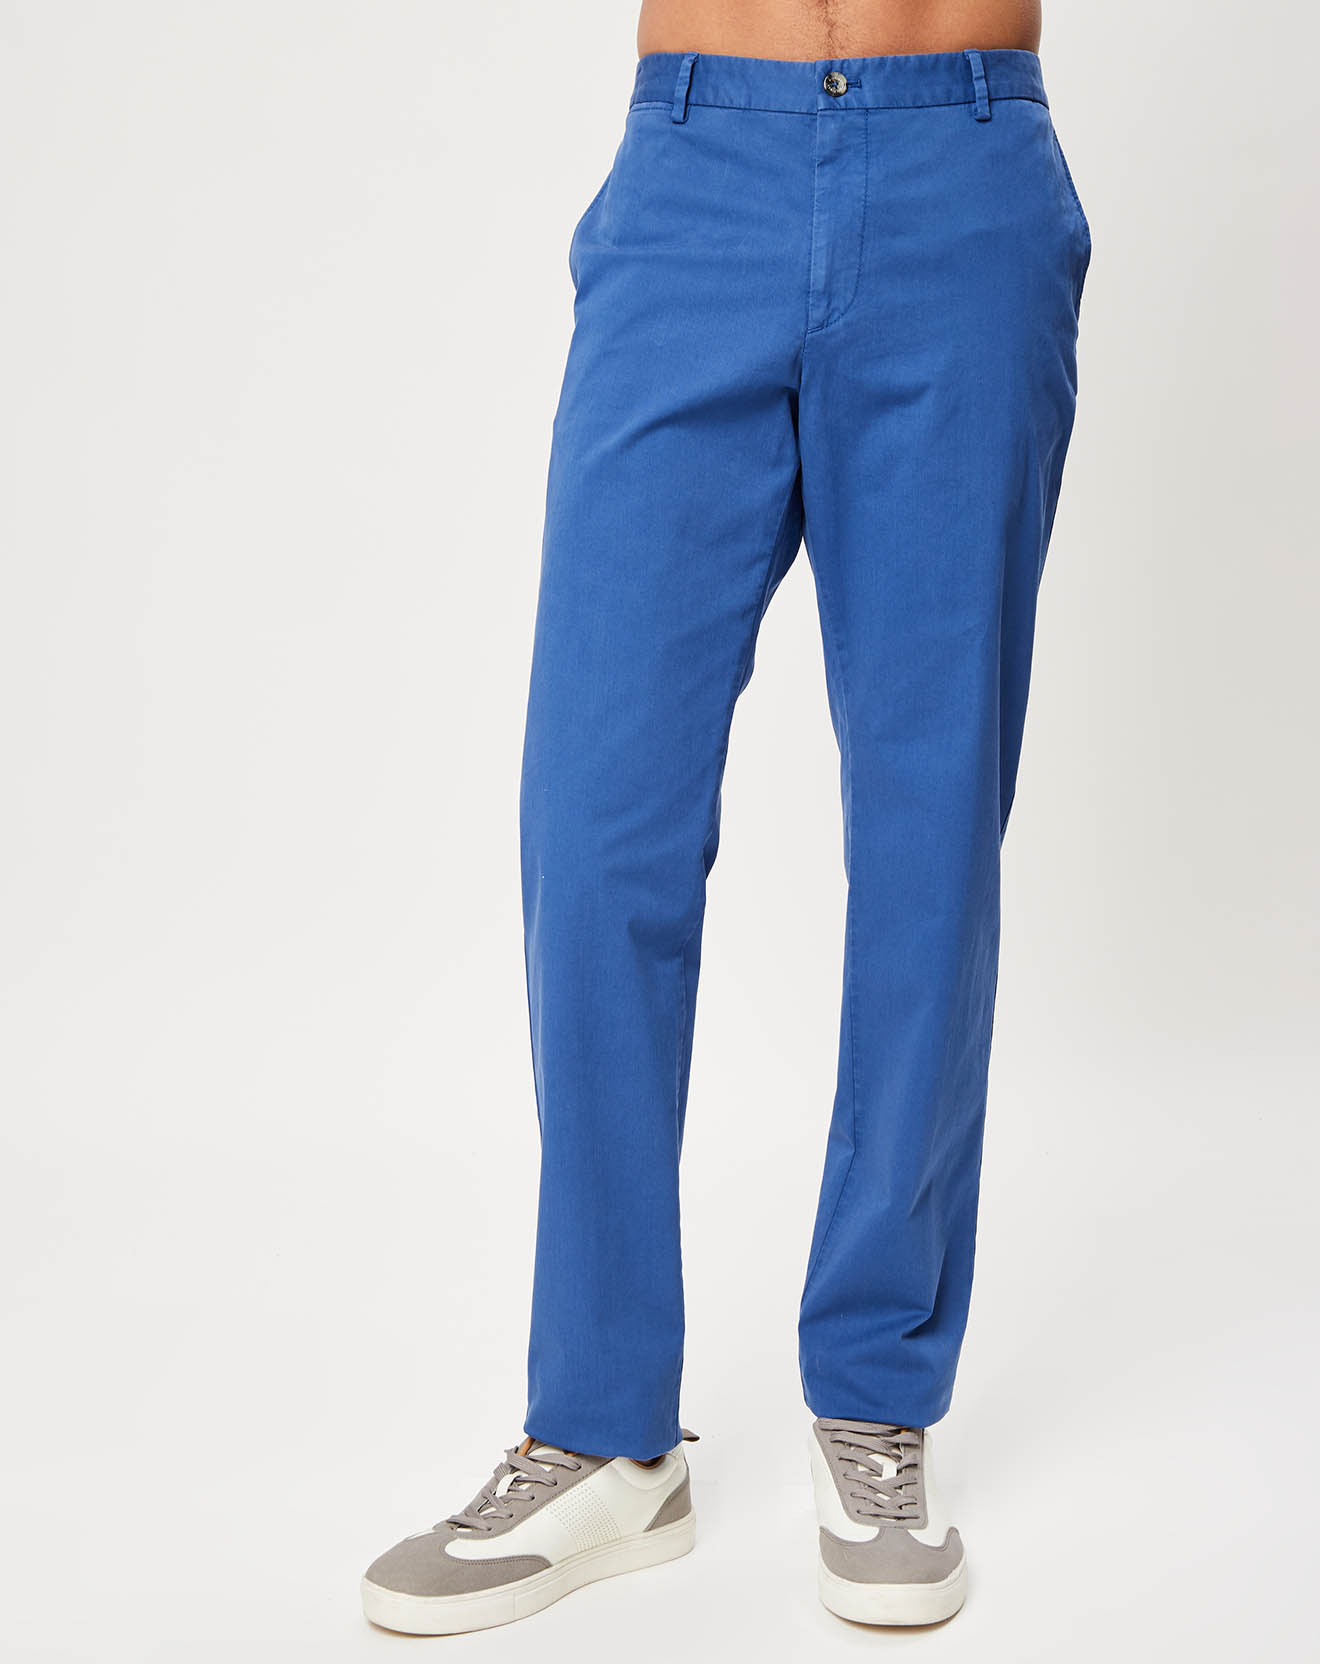 Pantalon Wlm-W bleu éclatant